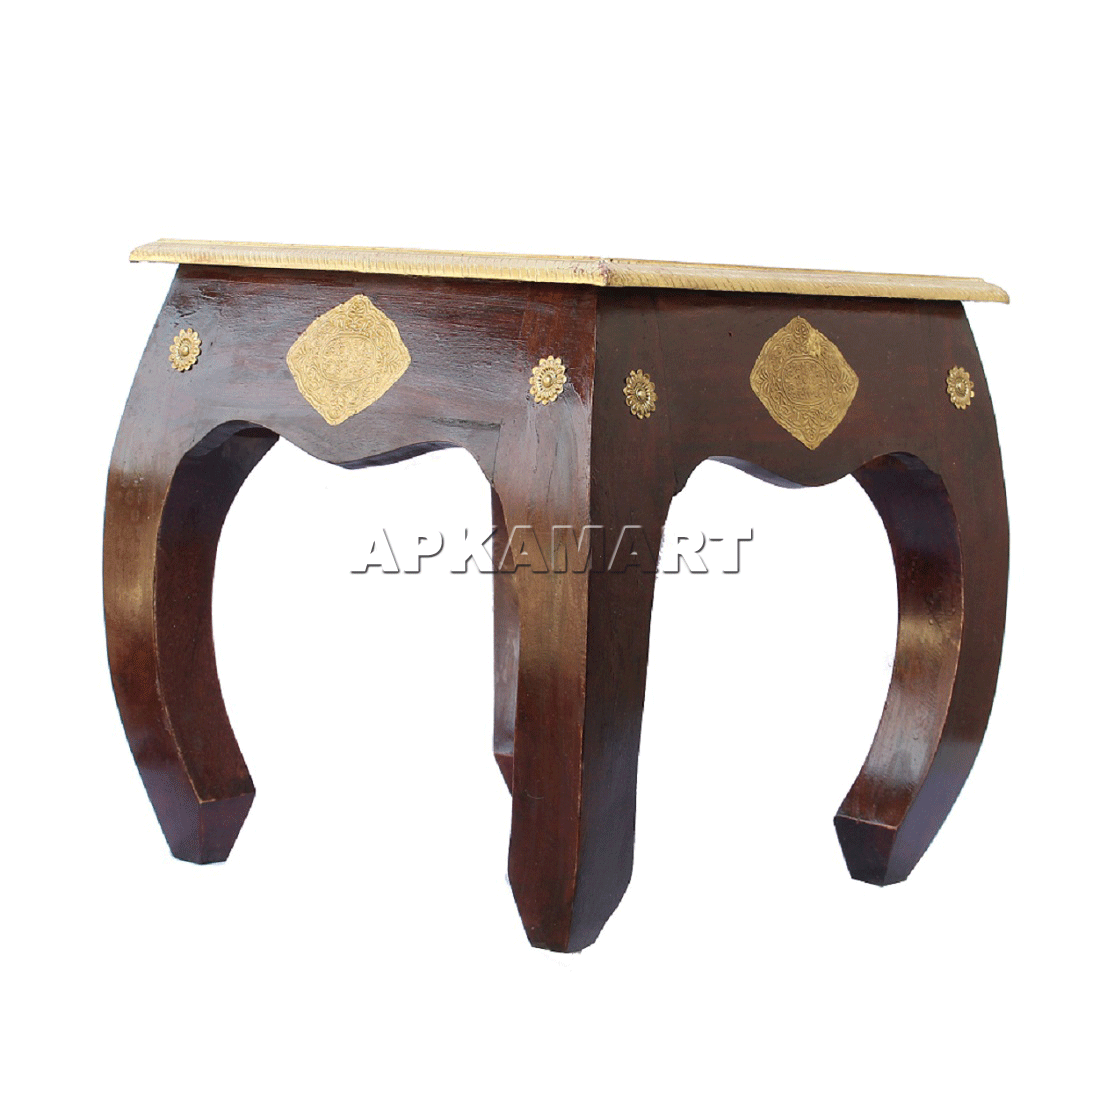 Brass Embellished Designer Coffee Table |Center Table for Living Room -16 Inch - ApkaMart